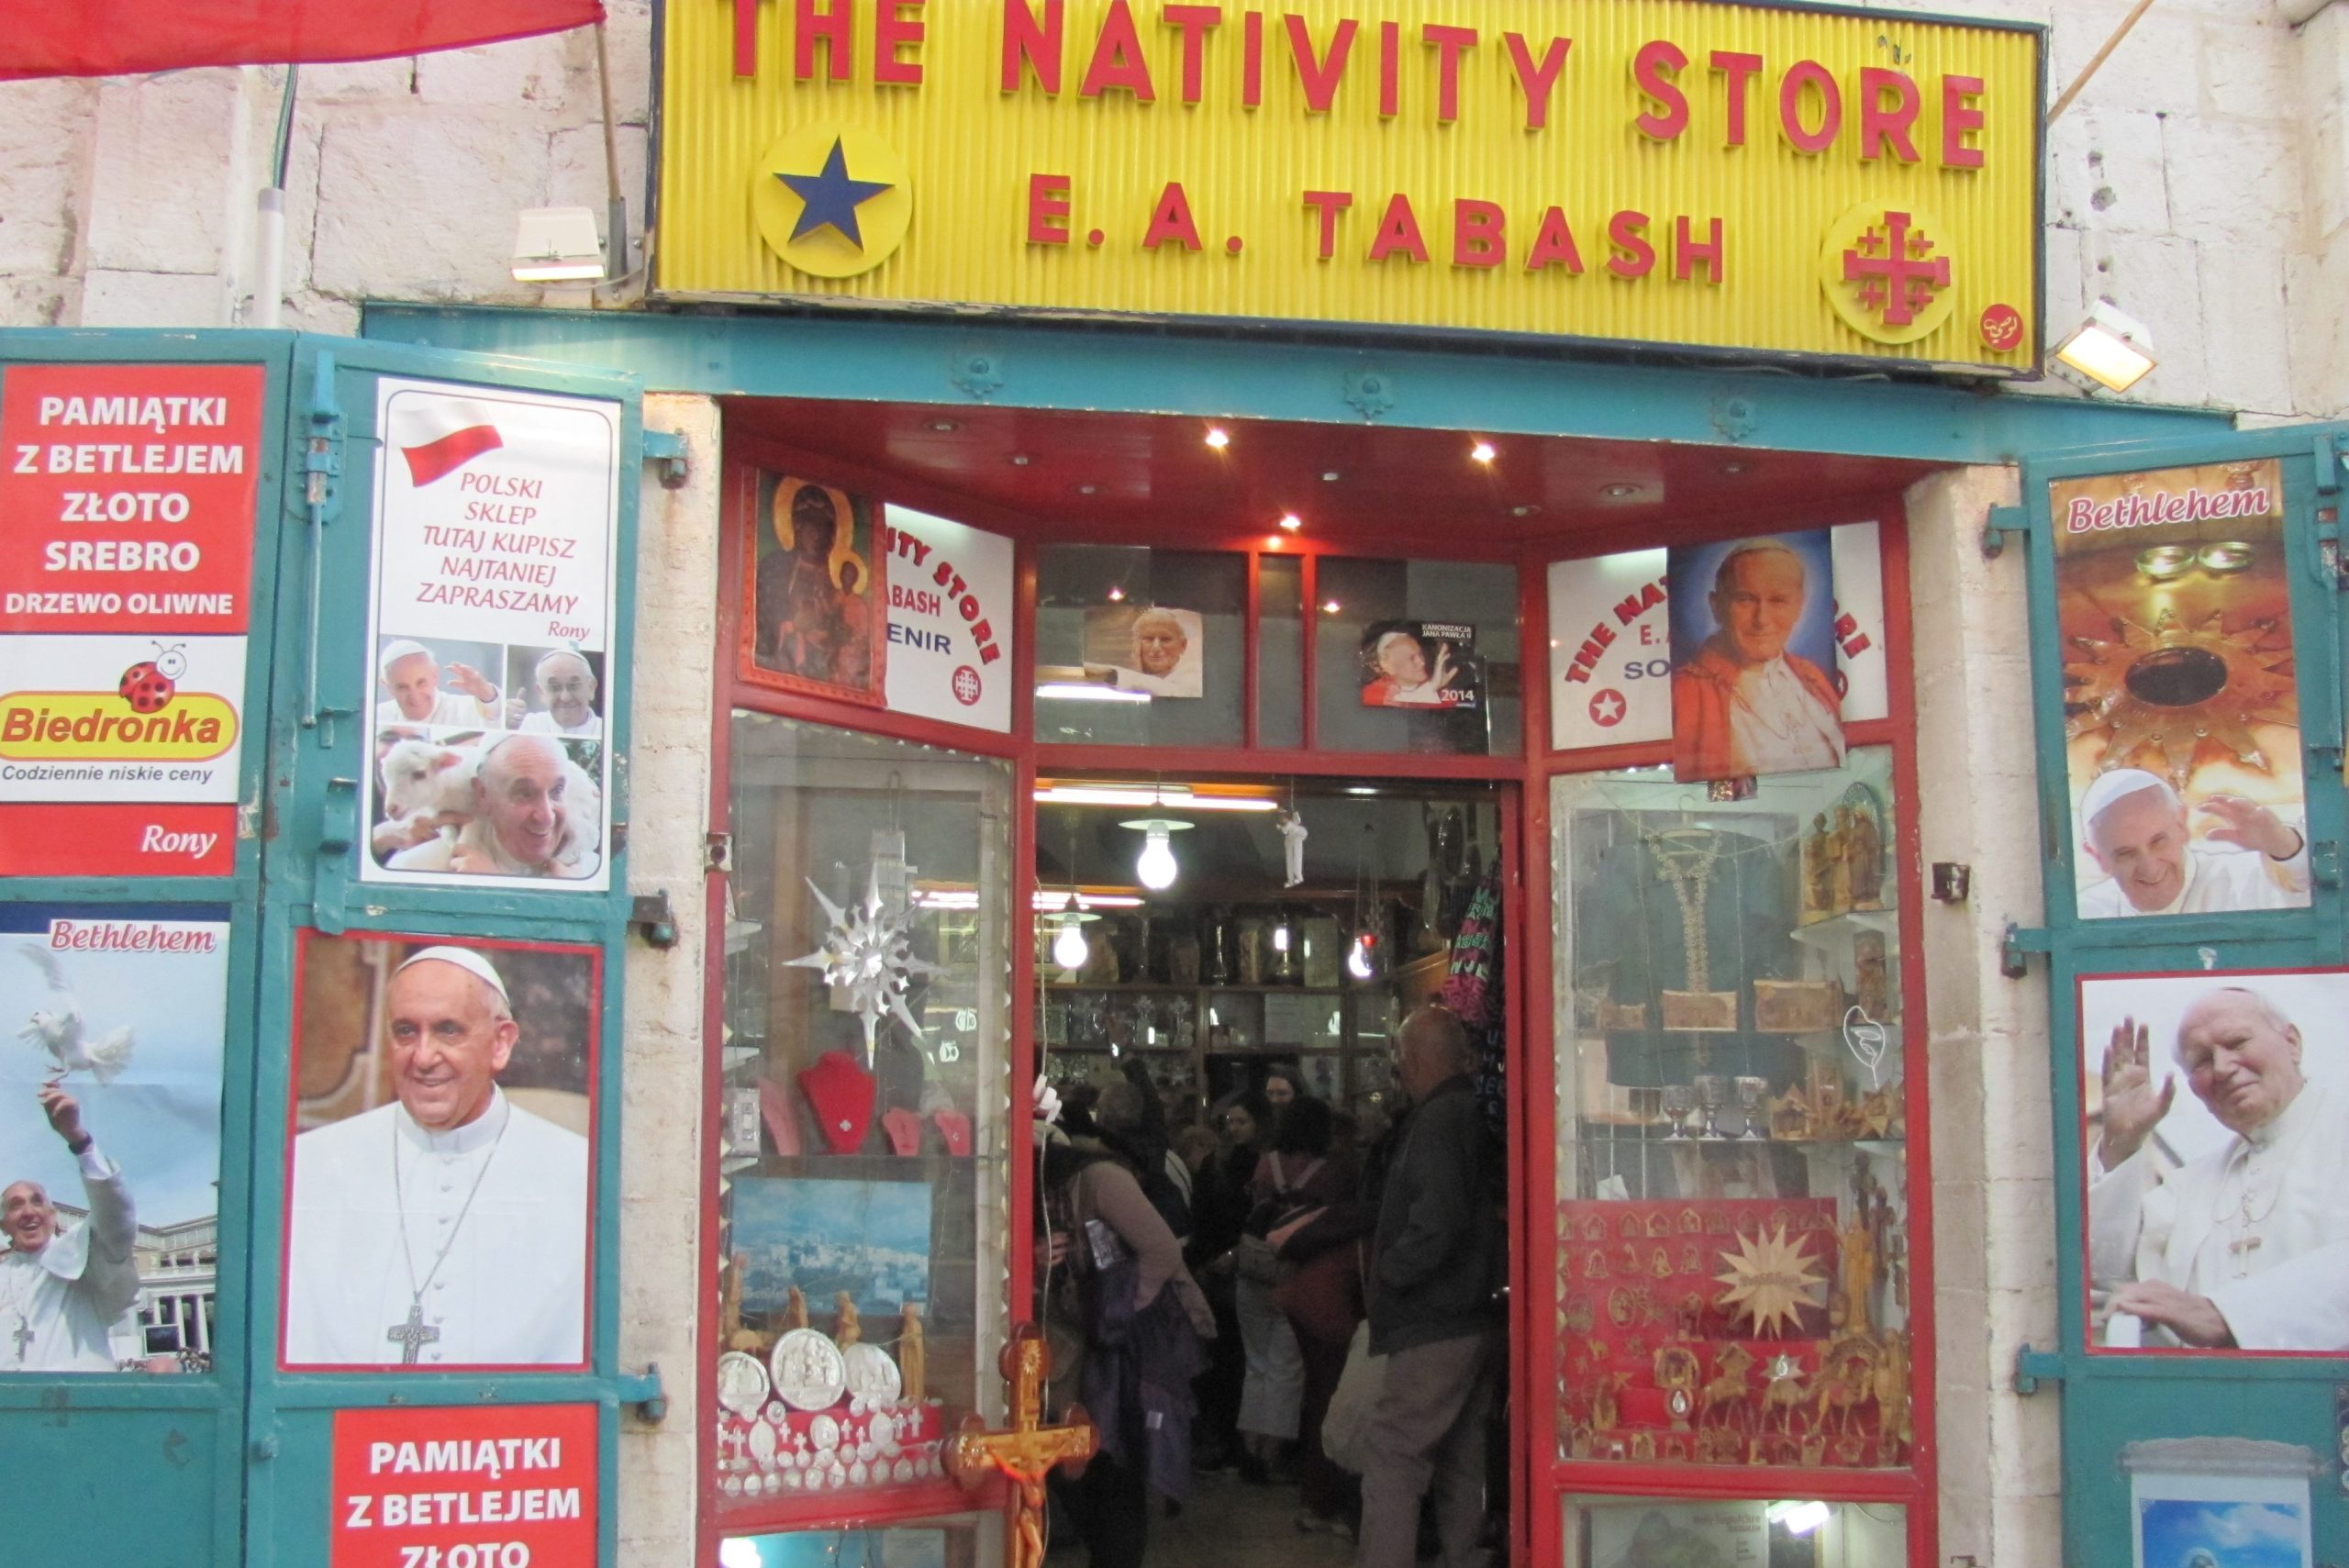 The Tabash family's Nativity Store in Manger Square, Bethlehem